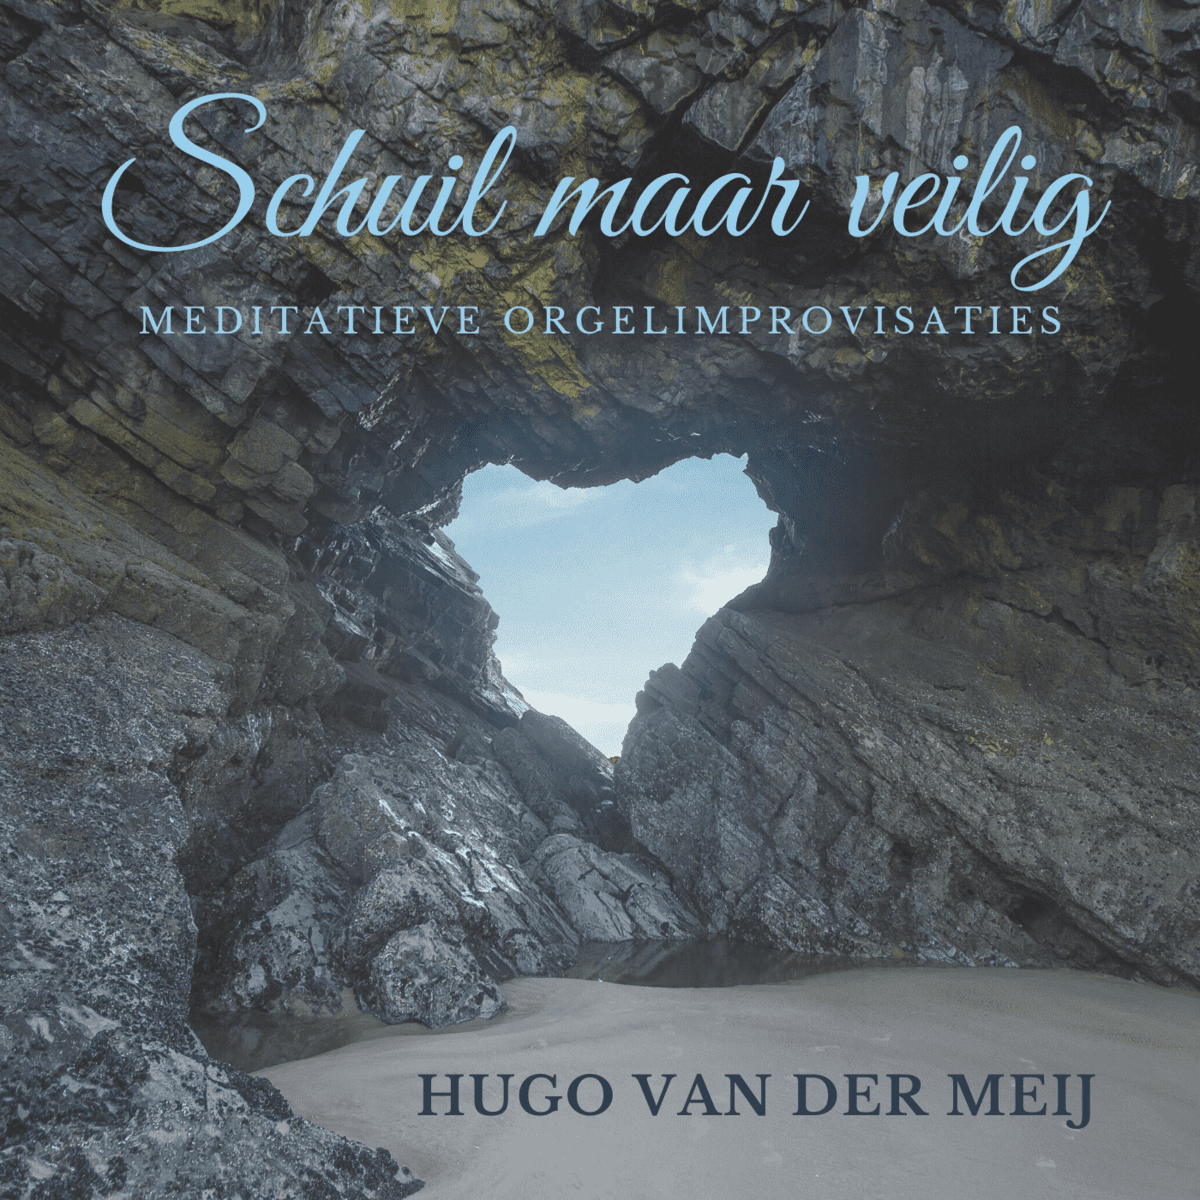 Cover image "Schuil Maar Veilig" by Hugo van der Meij